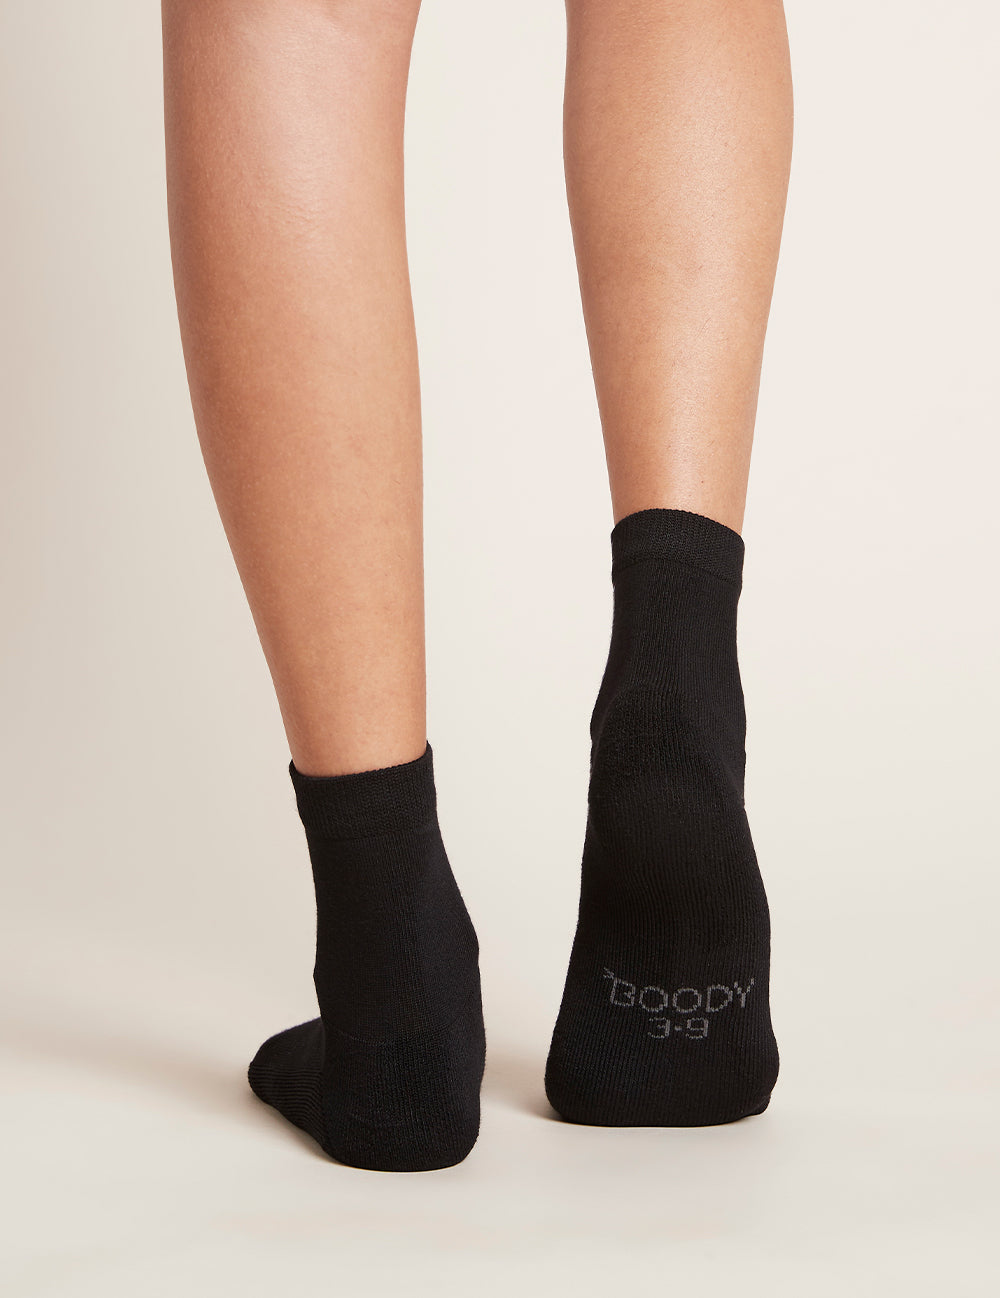 Women_s-Everyday-Ankle-Socks-2.0-Black-Back_d27703cc-ef16-4e50-93c6-901d2910ac18.jpg